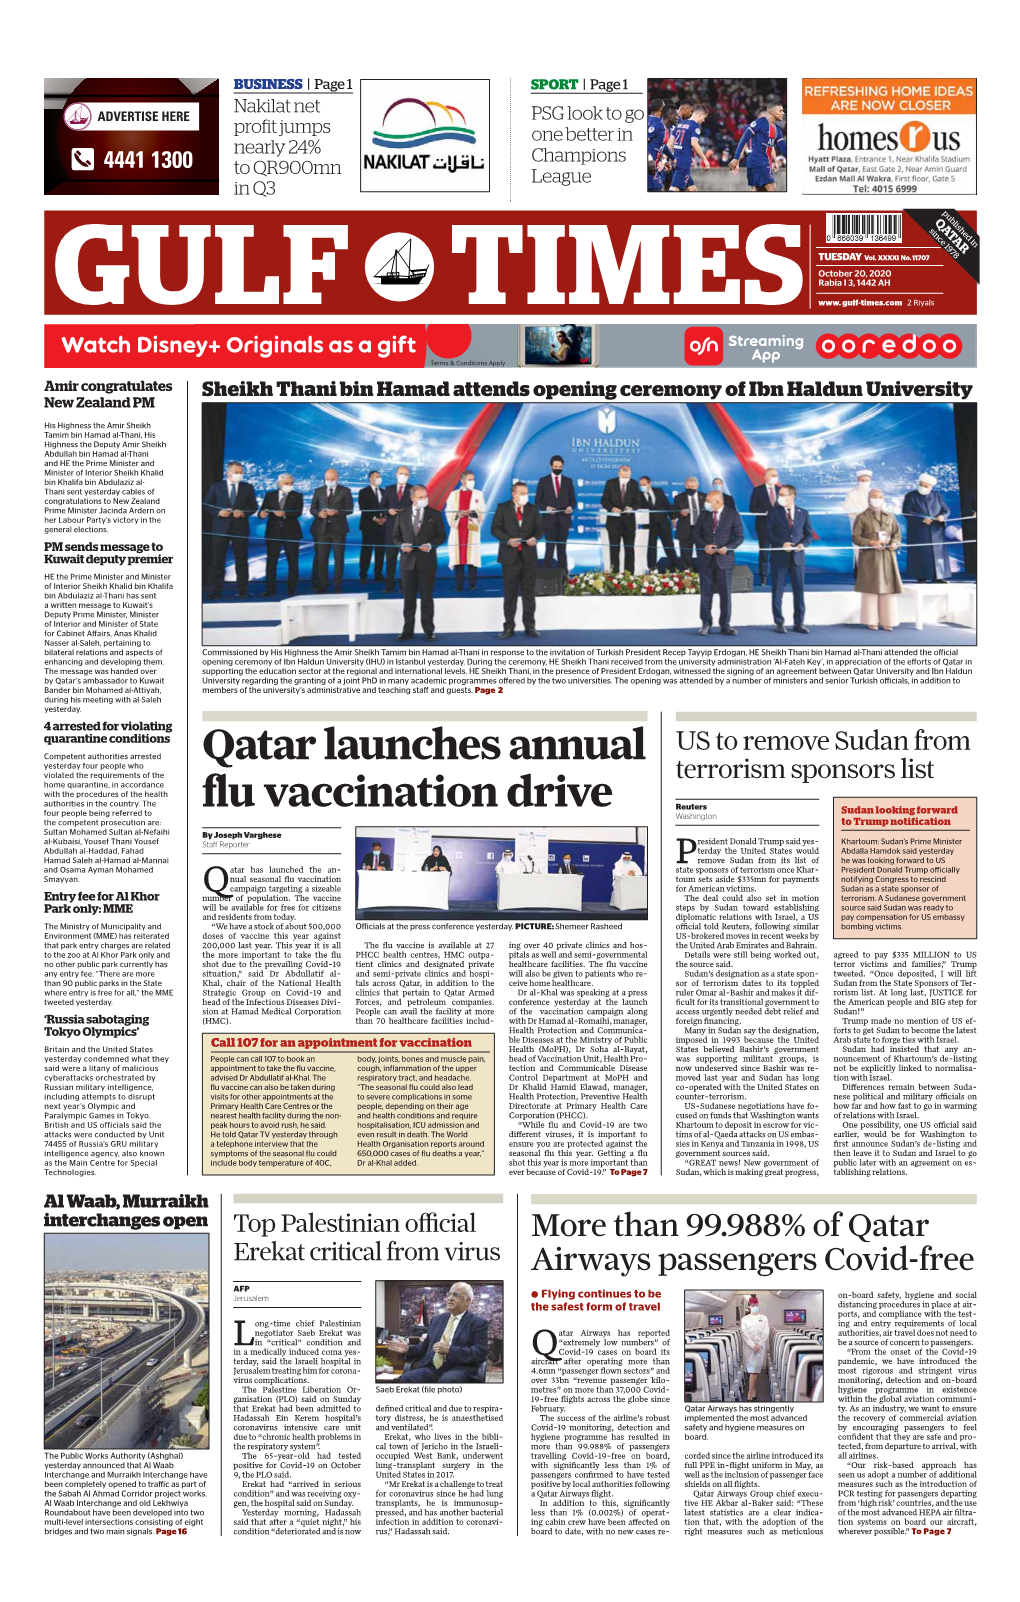 Qatar Launches Annual Flu Vaccination Drive